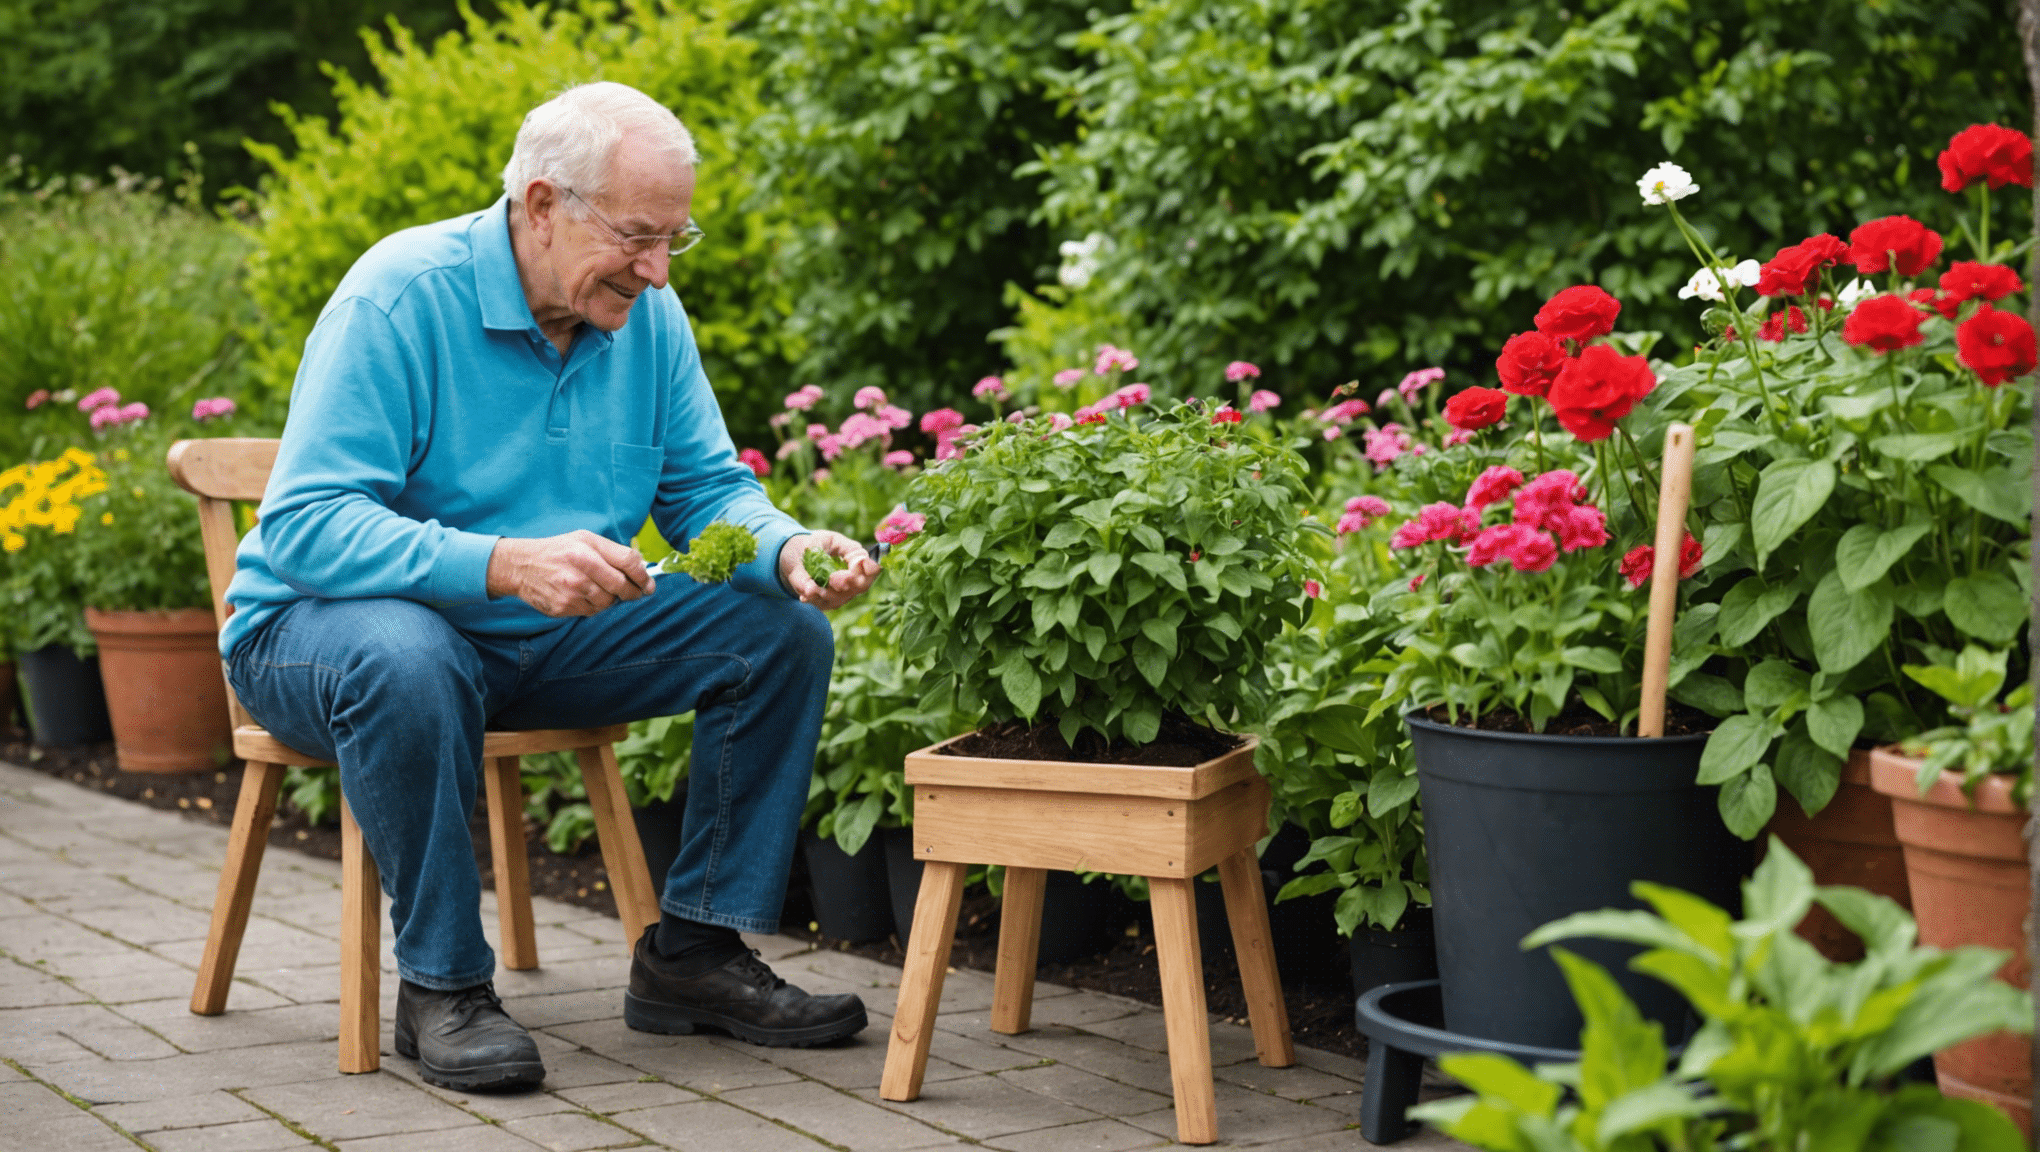 ontdek de voordelen van tuinkrukjes voor senioren, waaronder verbeterd comfort, toegankelijkheid en gebruiksgemak. Ontdek hoe tuinkrukjes tuinieren voor ouderen leuker en beheersbaarder kunnen maken.